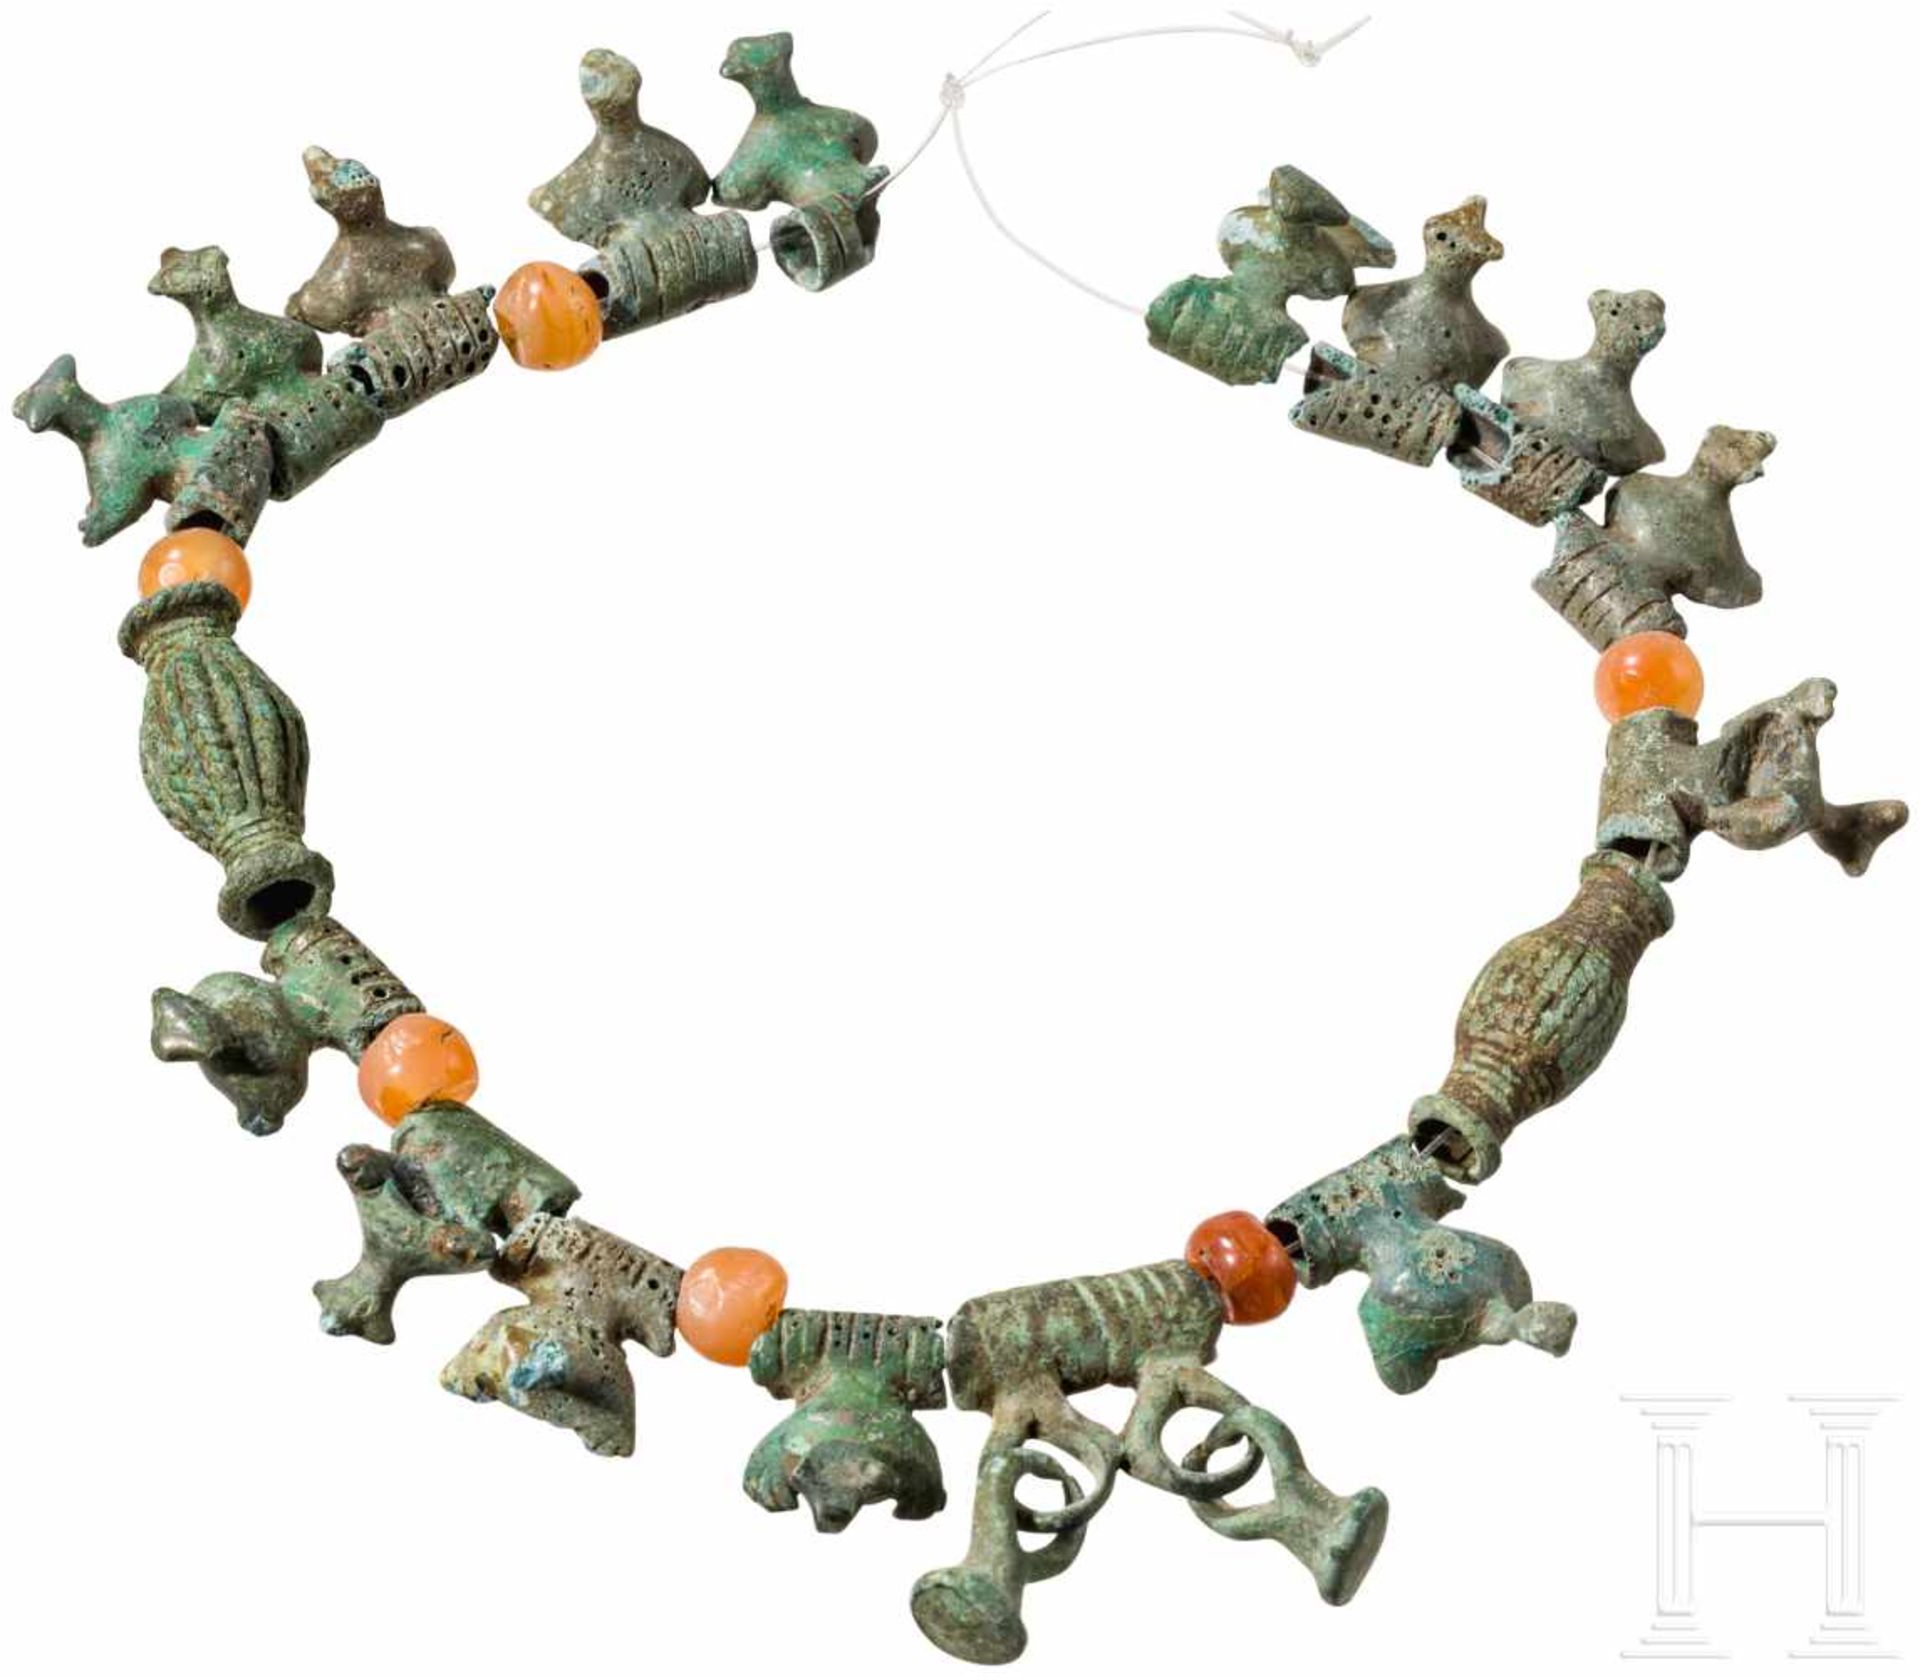 Kette aus Bronze- und Karneolperlen, Kaukasus, Koban-Kultur, 8. - 7. Jhdt. v. Chr.Kette